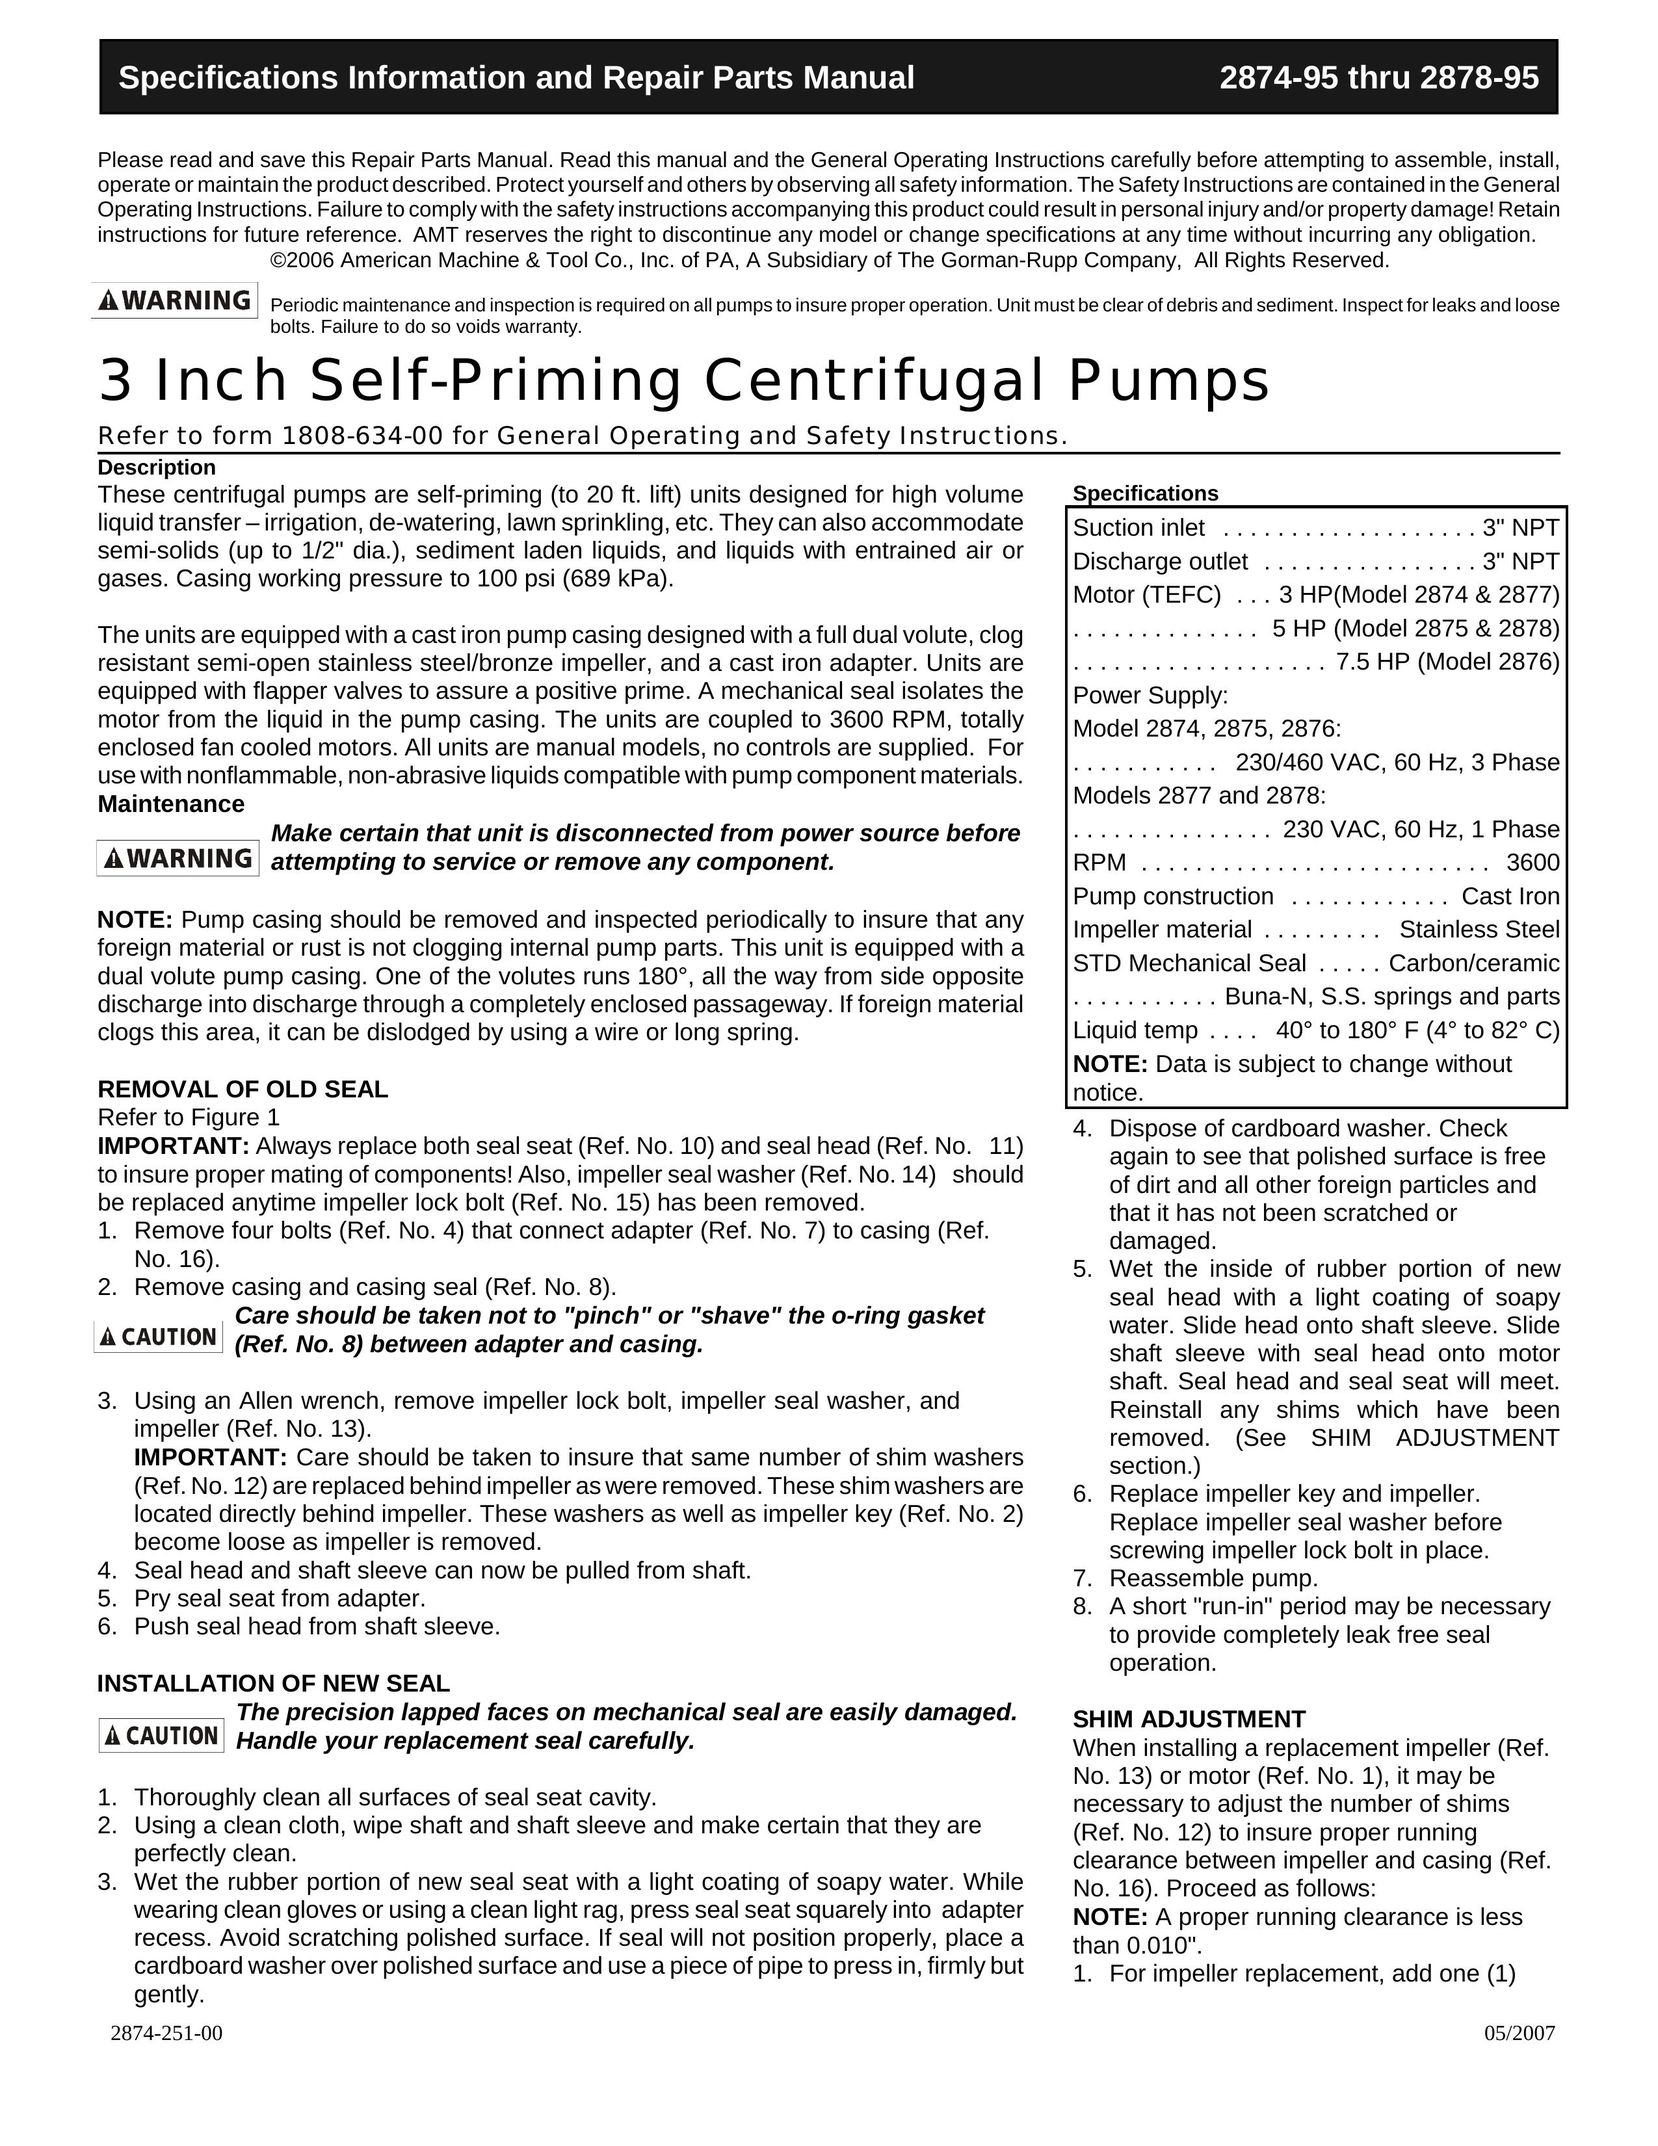 HP (Hewlett-Packard) 2874 Water Pump User Manual